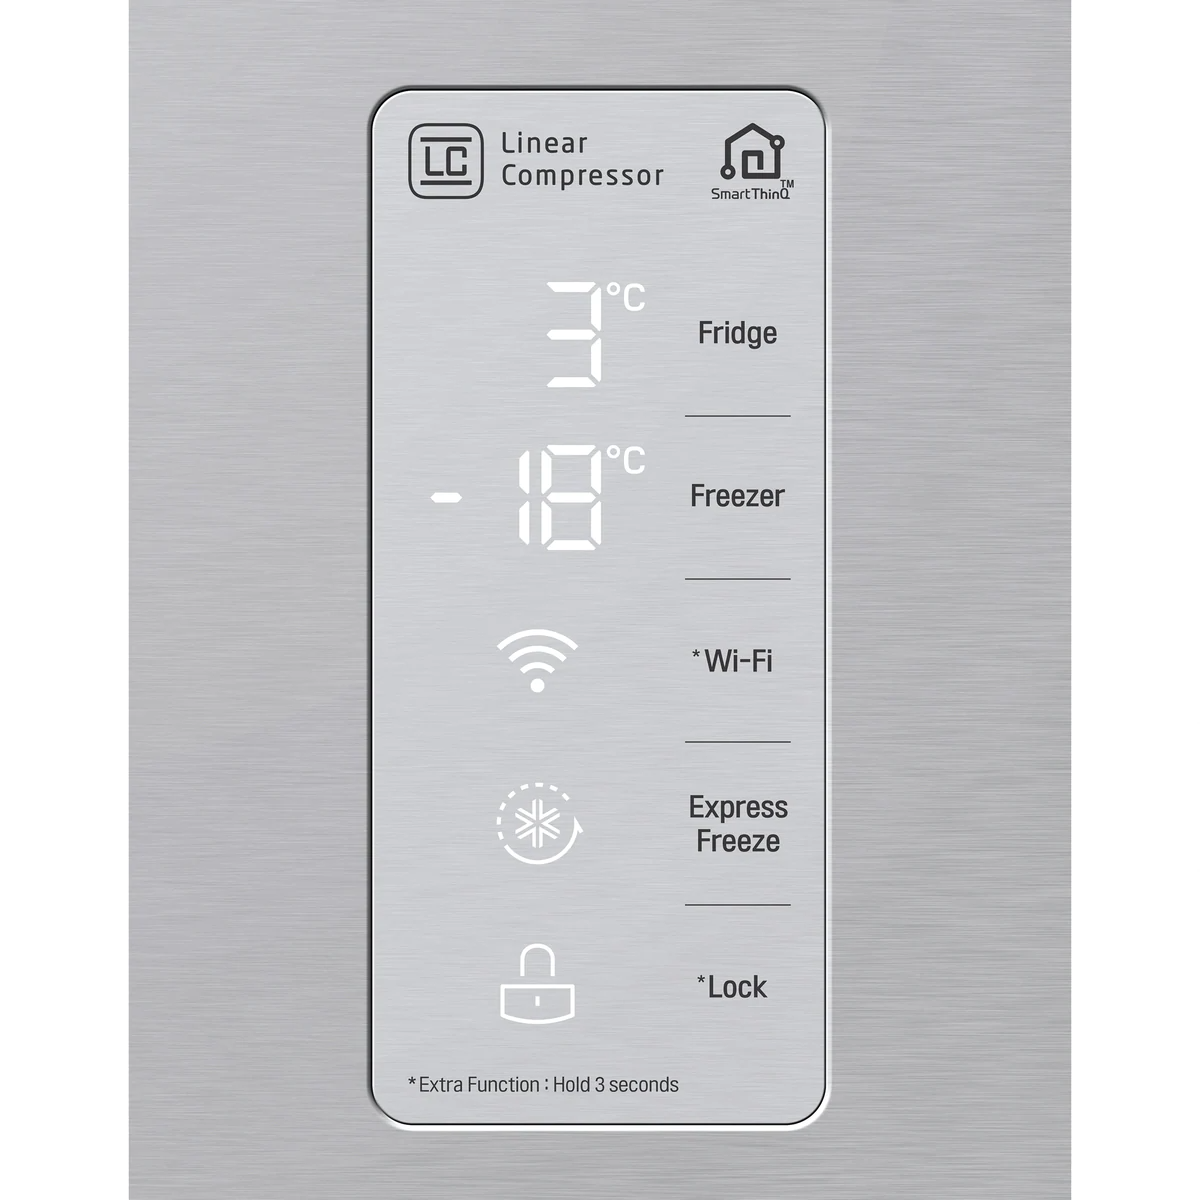 LG F522S11 side-by-side fridge 464L 對門式雪櫃